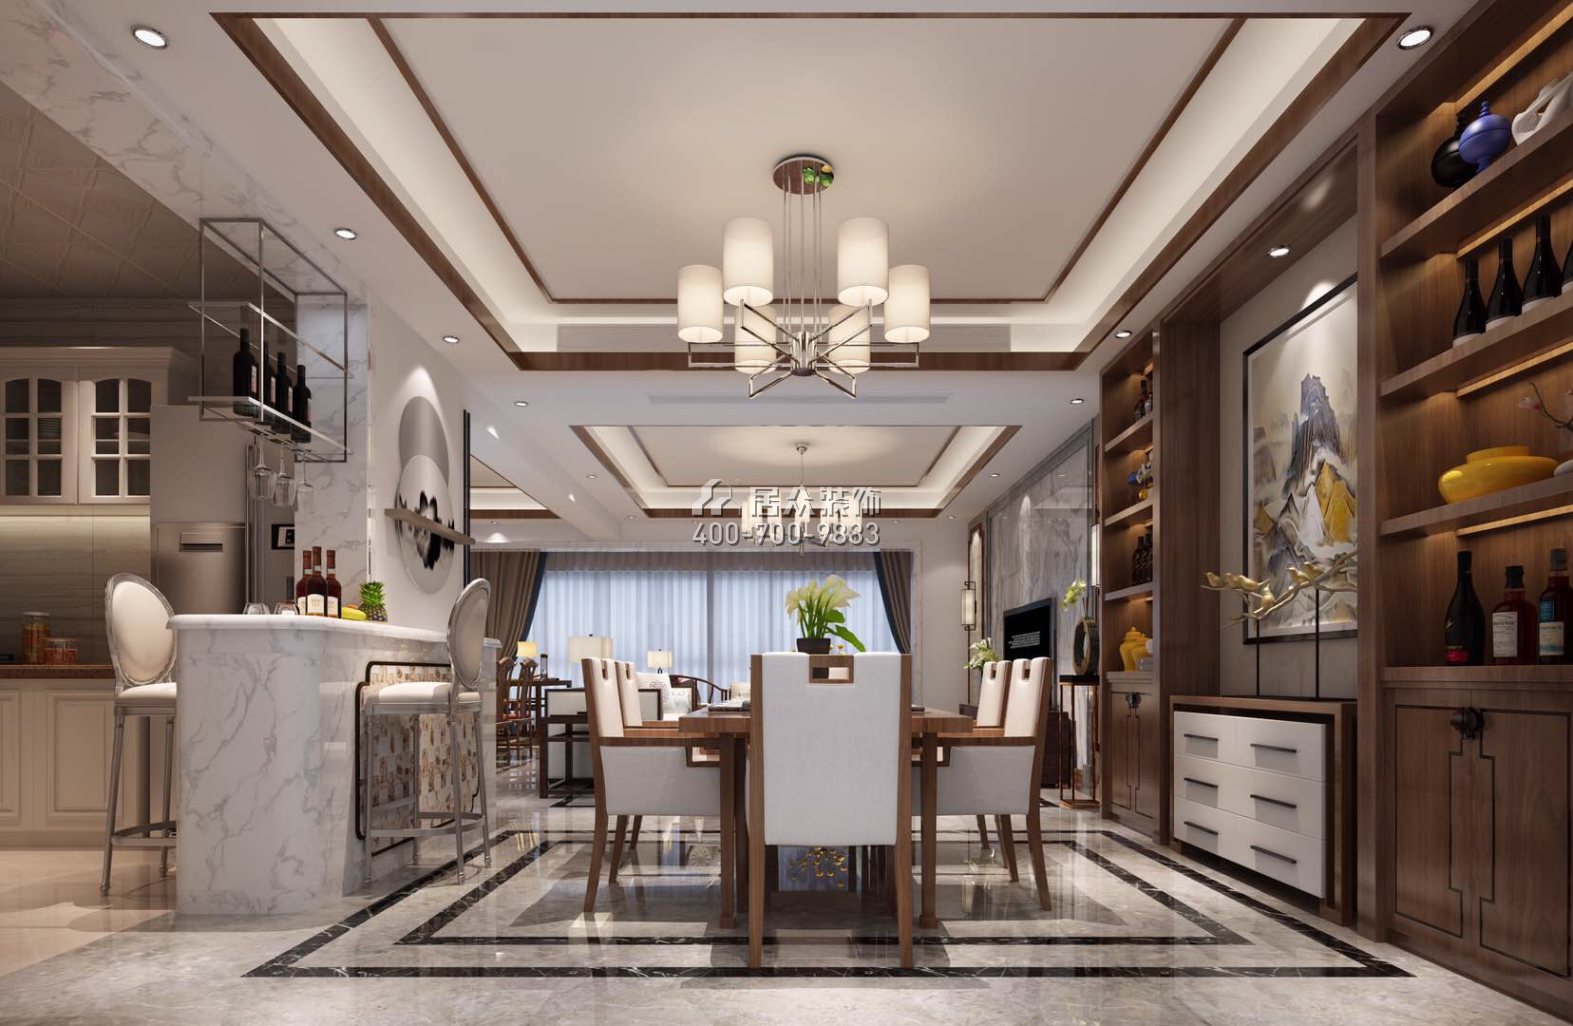 美的君兰江山178平方米中式风格平层户型餐厅装修效果图